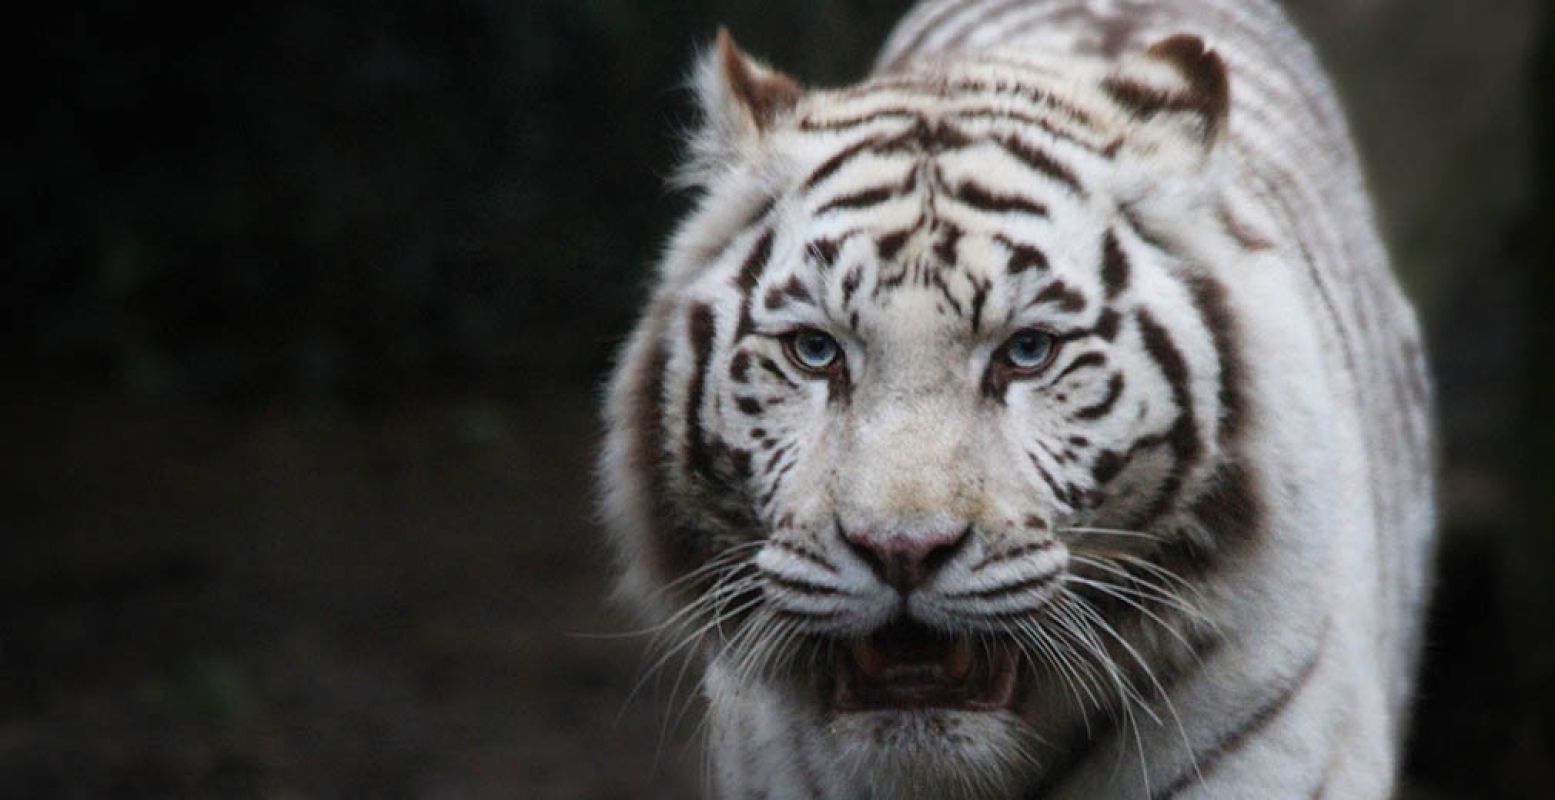 De witte tijgers van Ouwehands Dierenpark zijn waarschijnlijk allebei overleden door nierfalen. Fotograaf:  jinterwas . Licentie:  Sommige rechten voorbehouden . Bron:  Flickr.com 